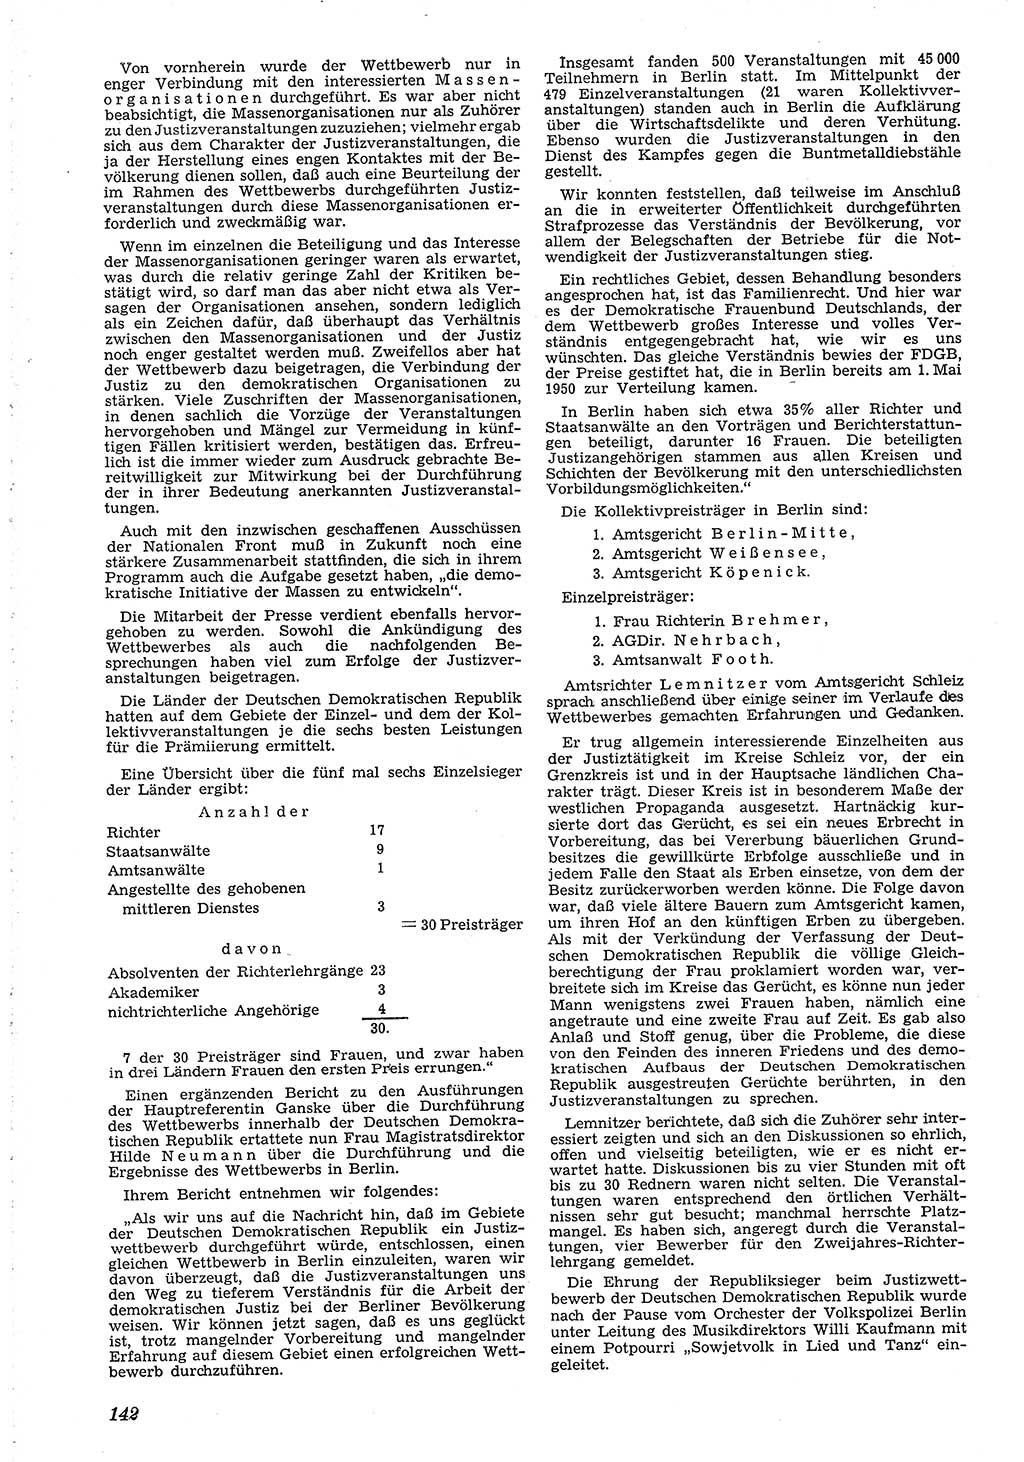 Neue Justiz (NJ), Zeitschrift für Recht und Rechtswissenschaft [Deutsche Demokratische Republik (DDR)], 4. Jahrgang 1950, Seite 142 (NJ DDR 1950, S. 142)